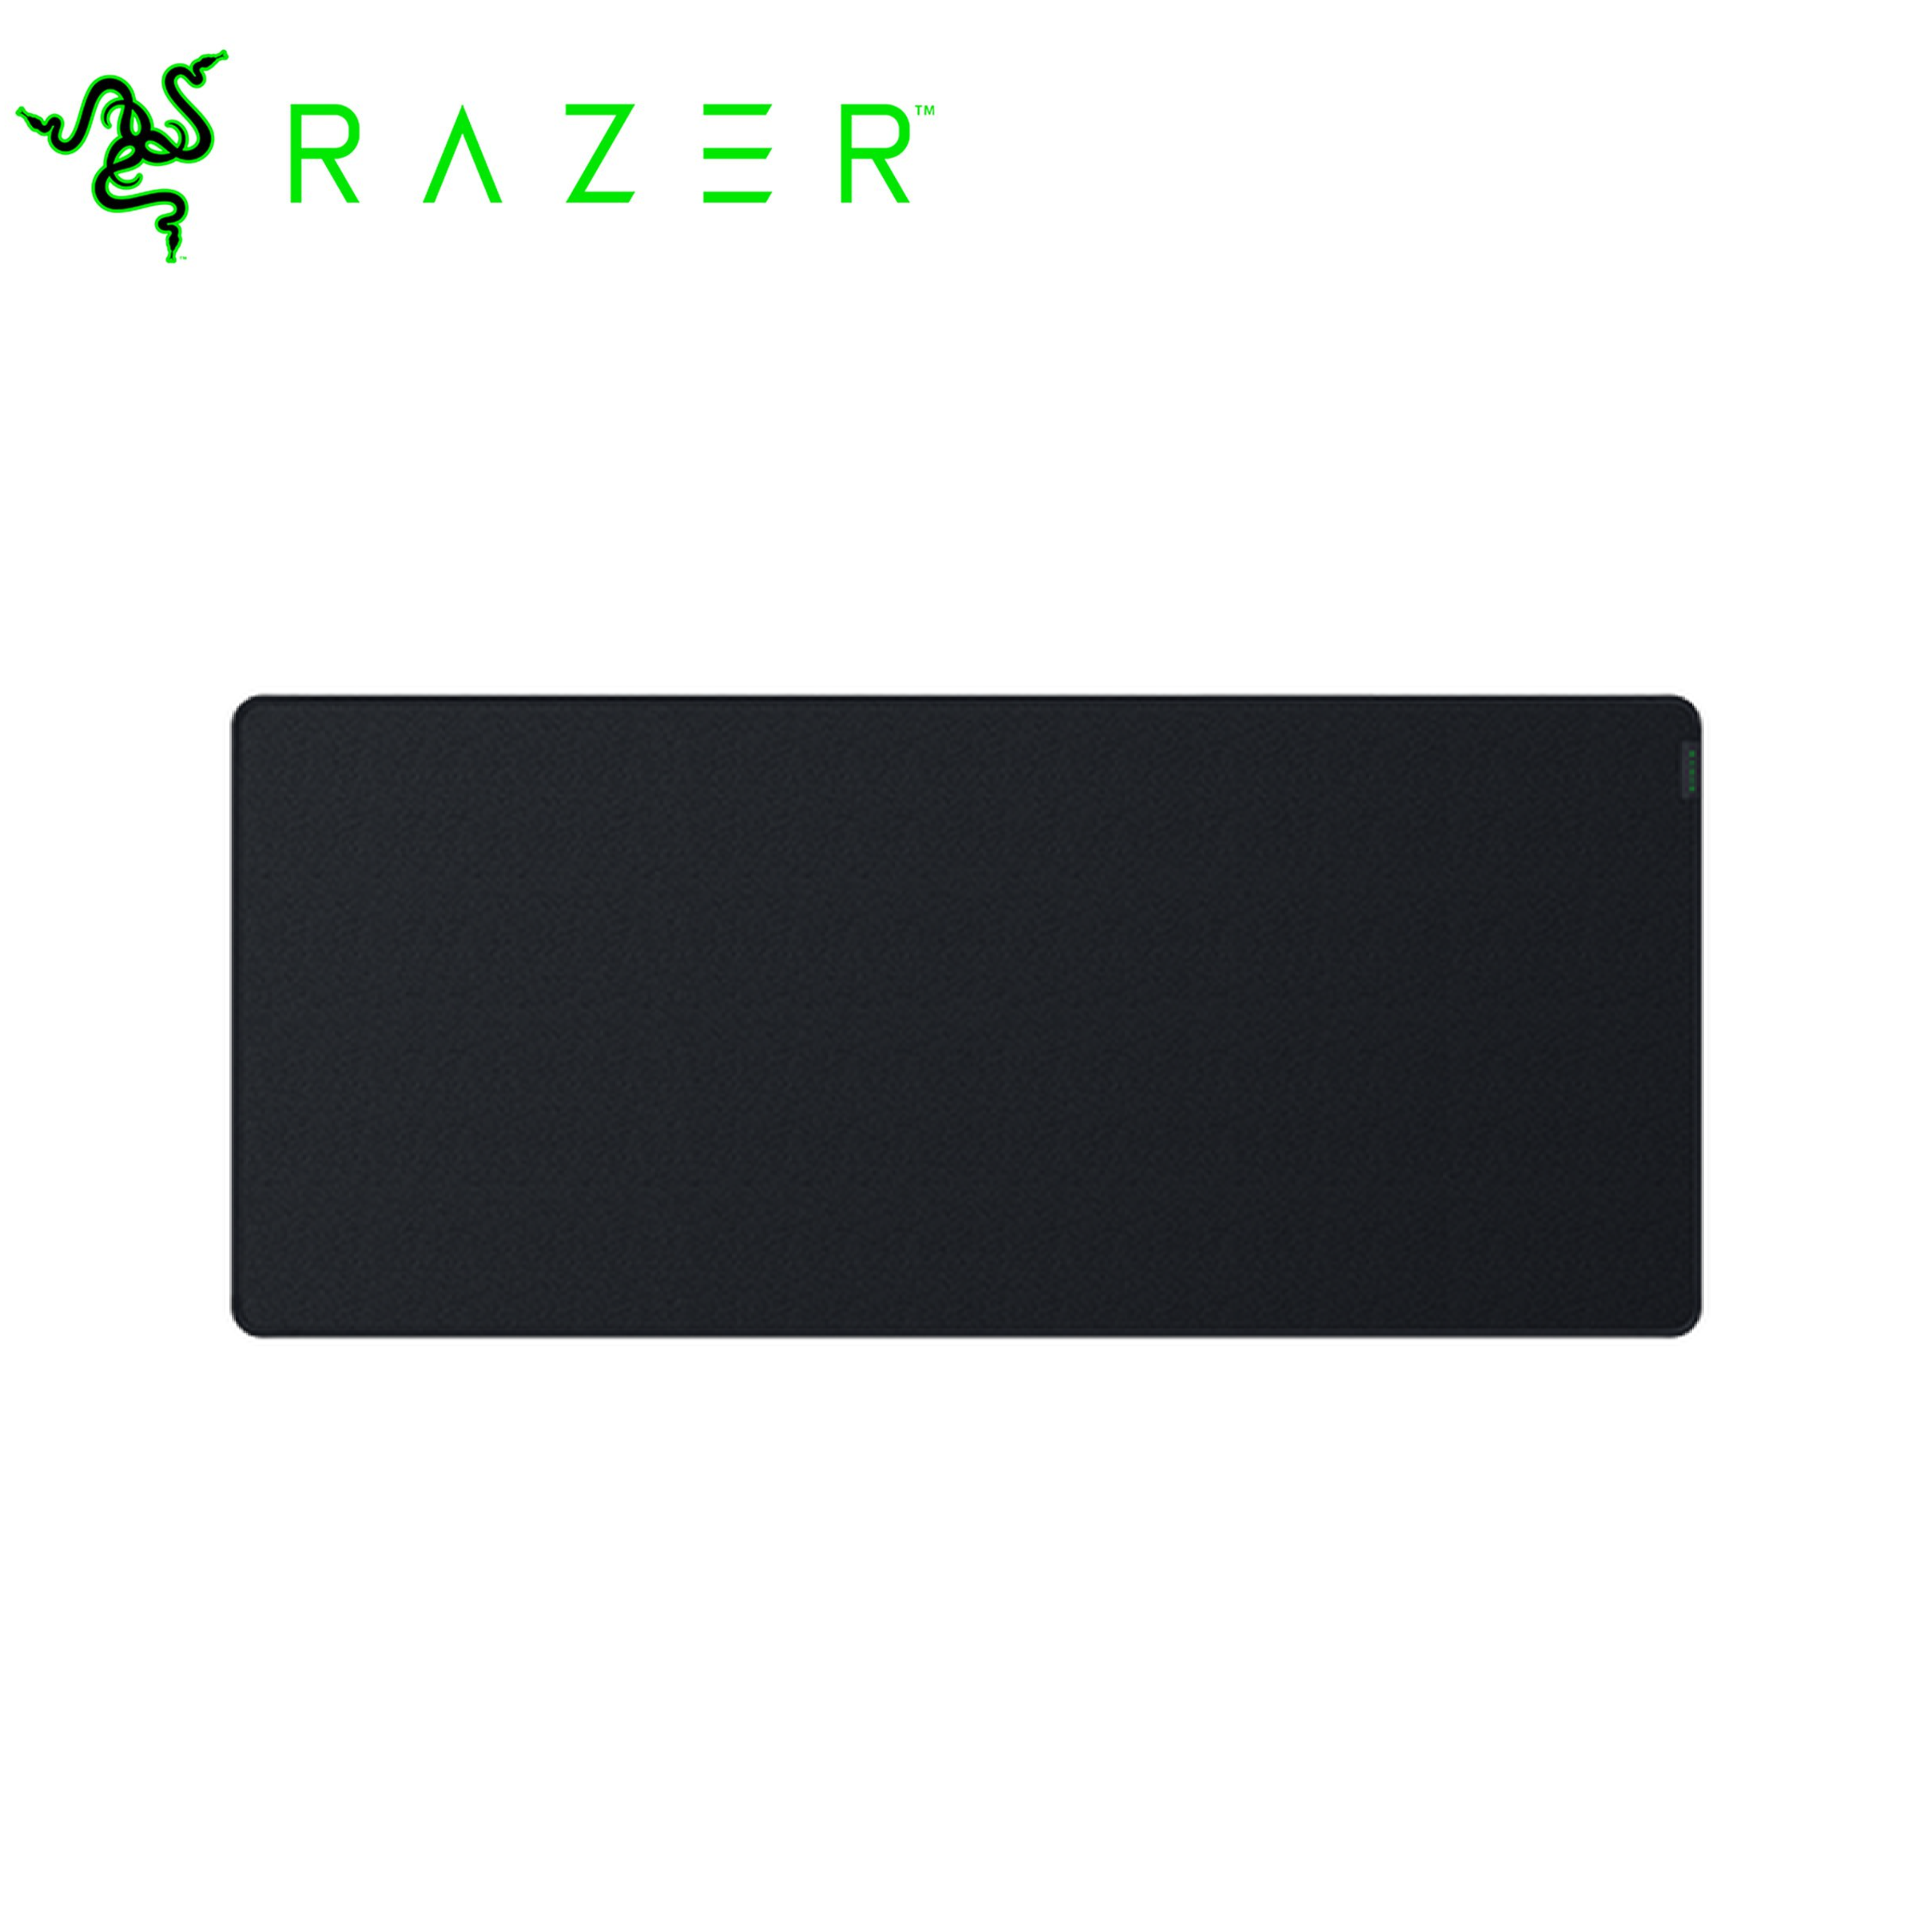 Razer Strider - Hybrid Gaming Mouse Mat